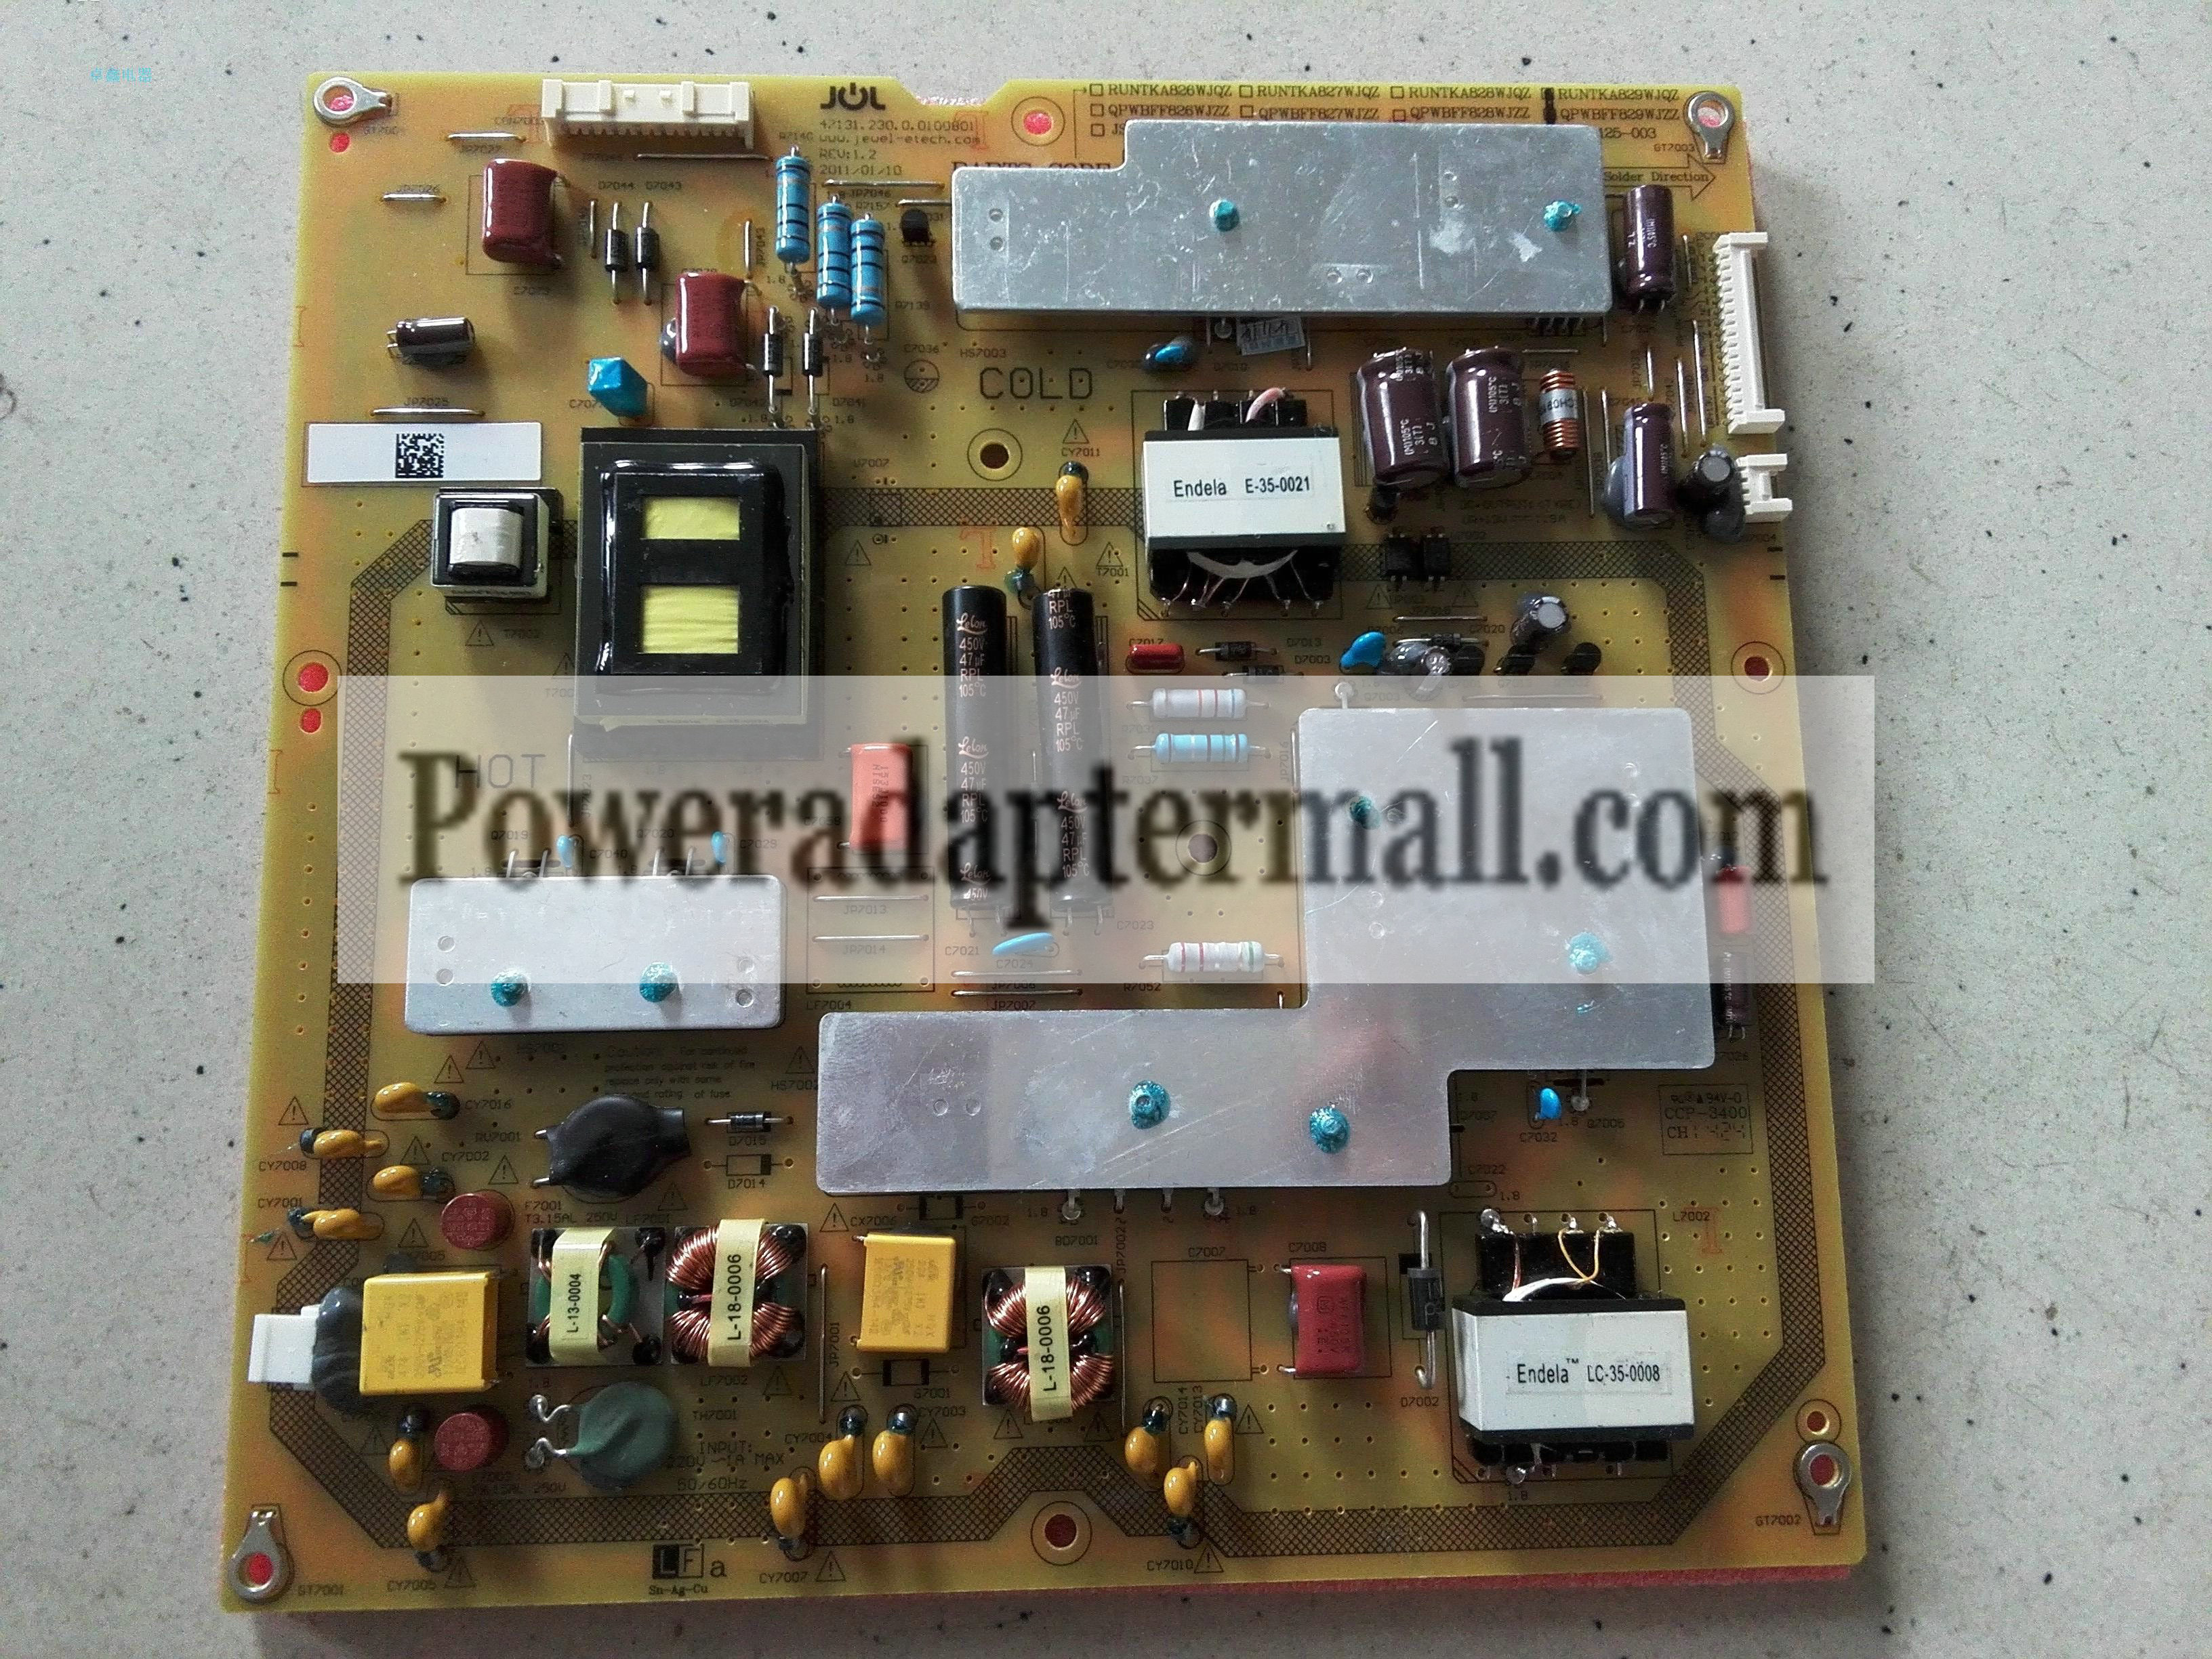 RUNTKA829WJQZ Sharp LCD-46LX530A Power Supply Board JSL4125-003